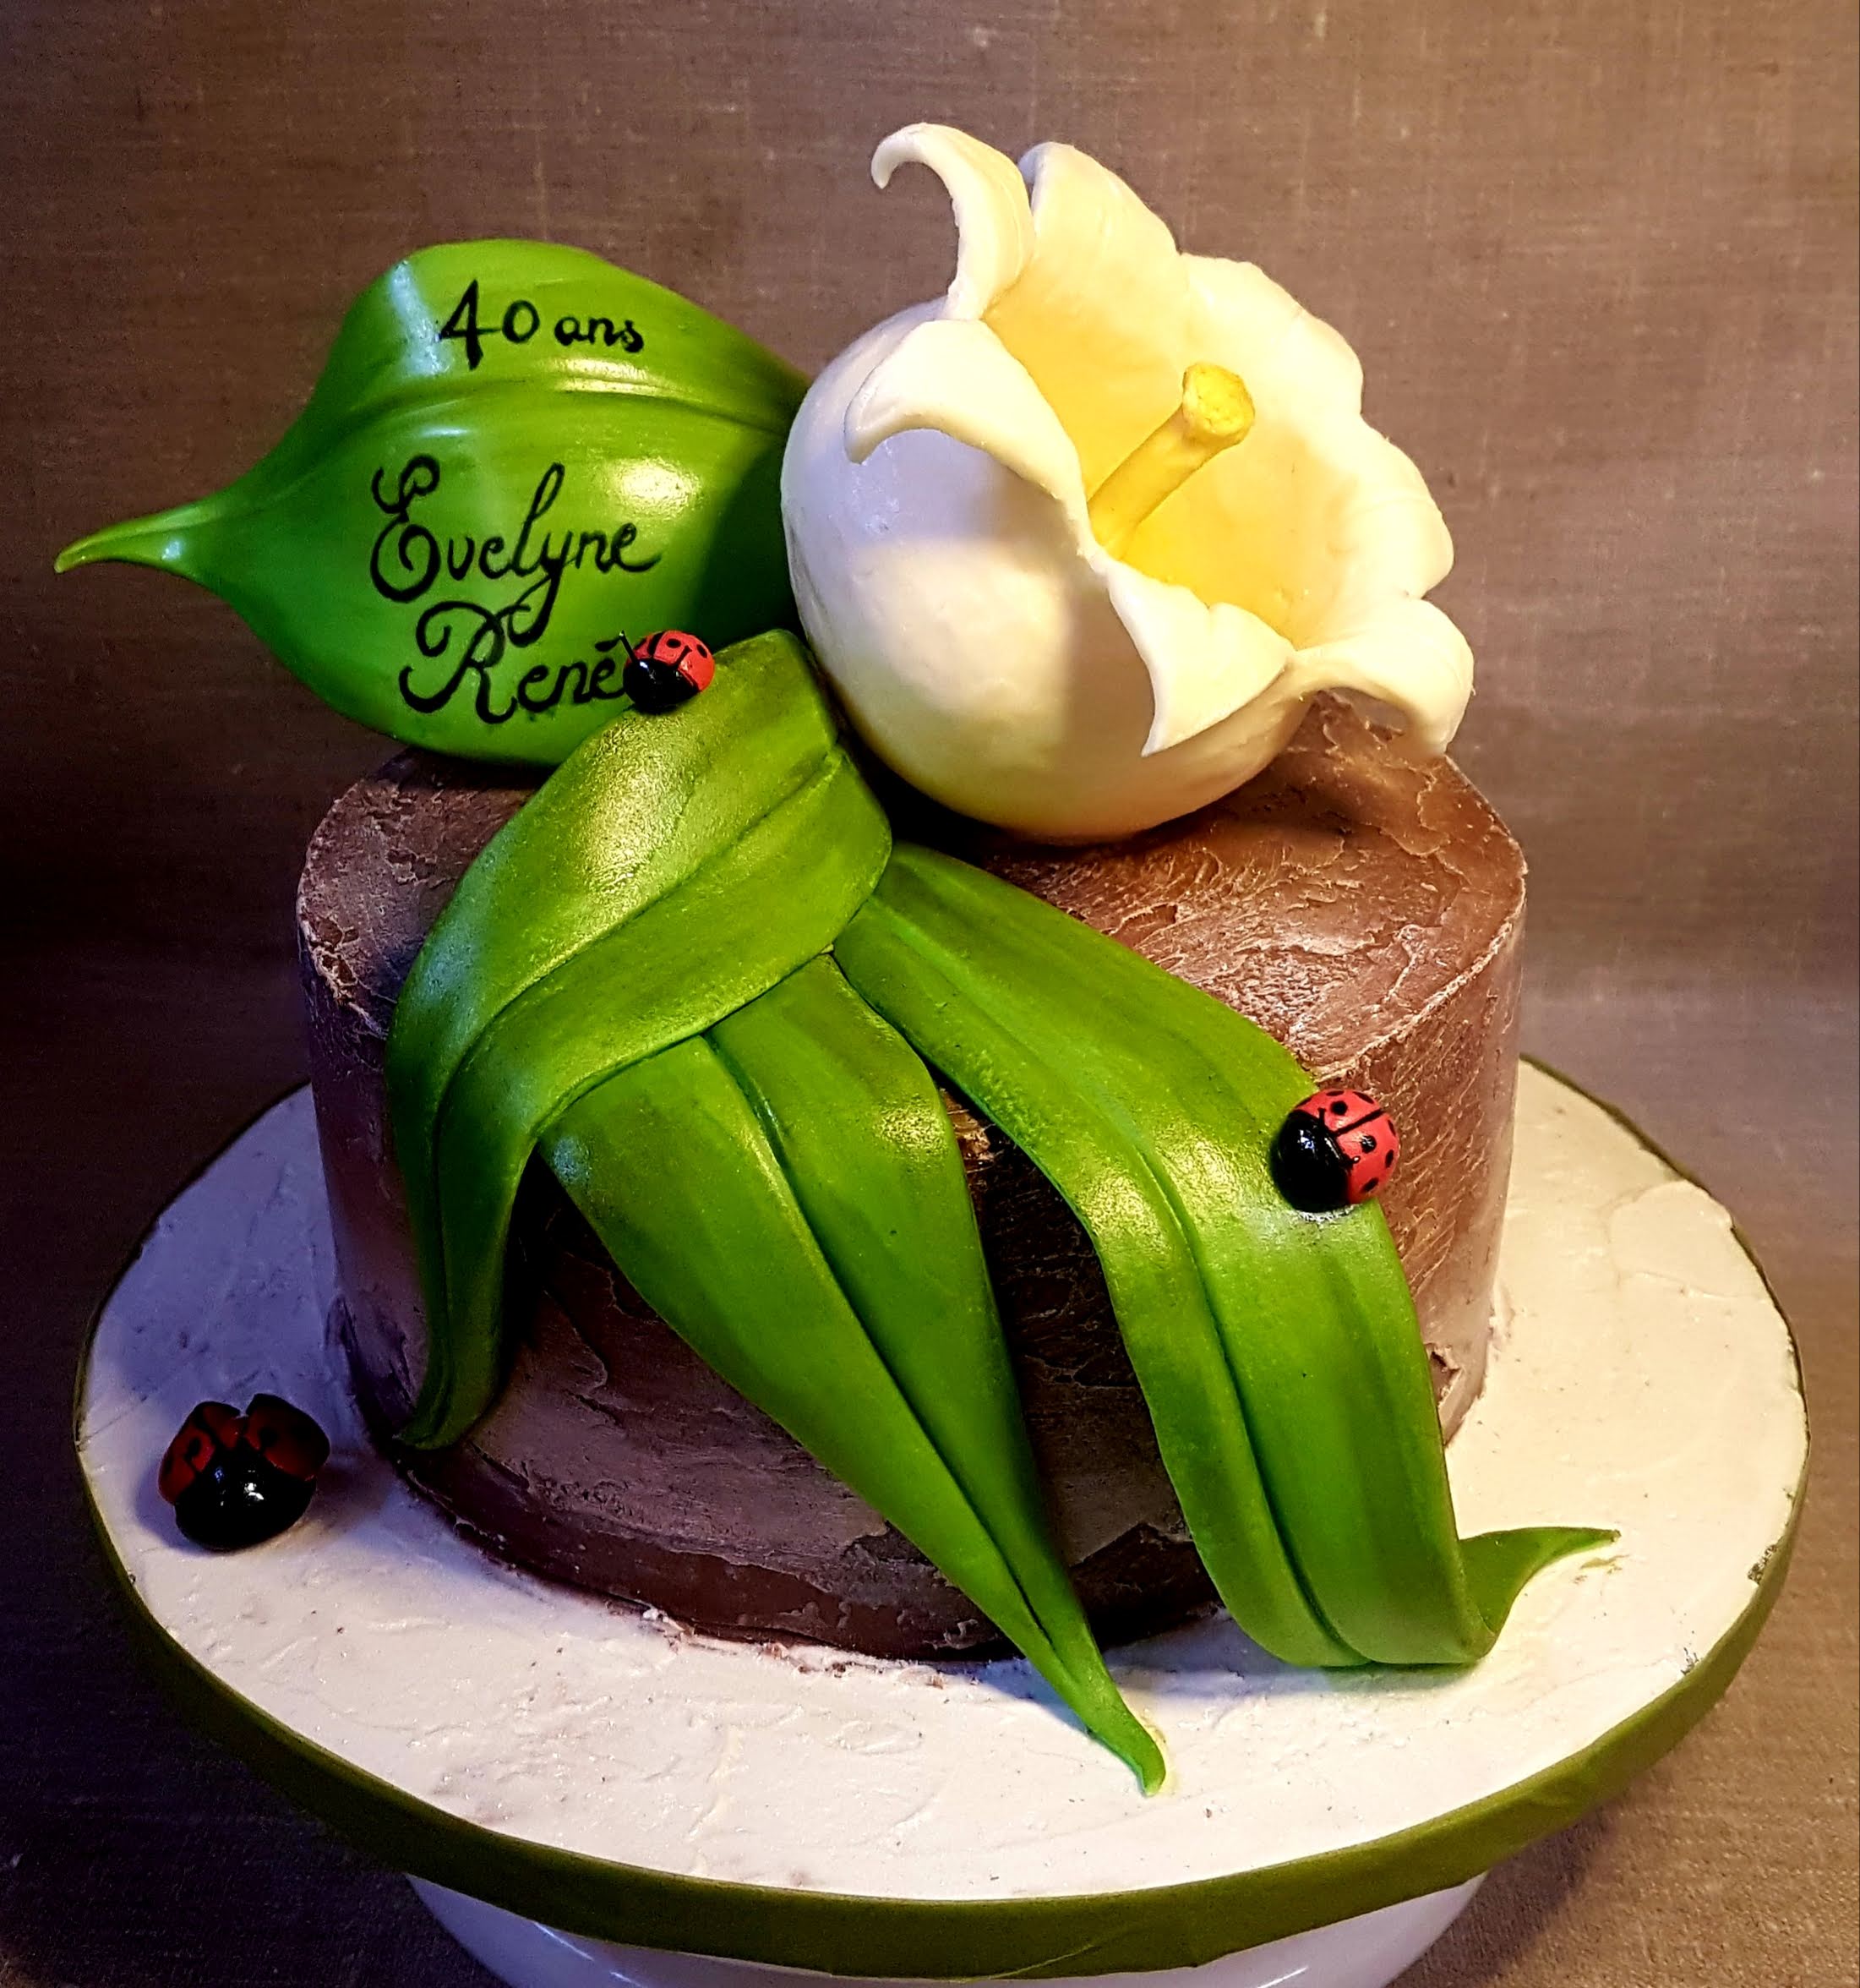 Cirta Cake Design - Gâteau en pâte à sucre - Création de gâteau en pâte à  sucre Strasbourg